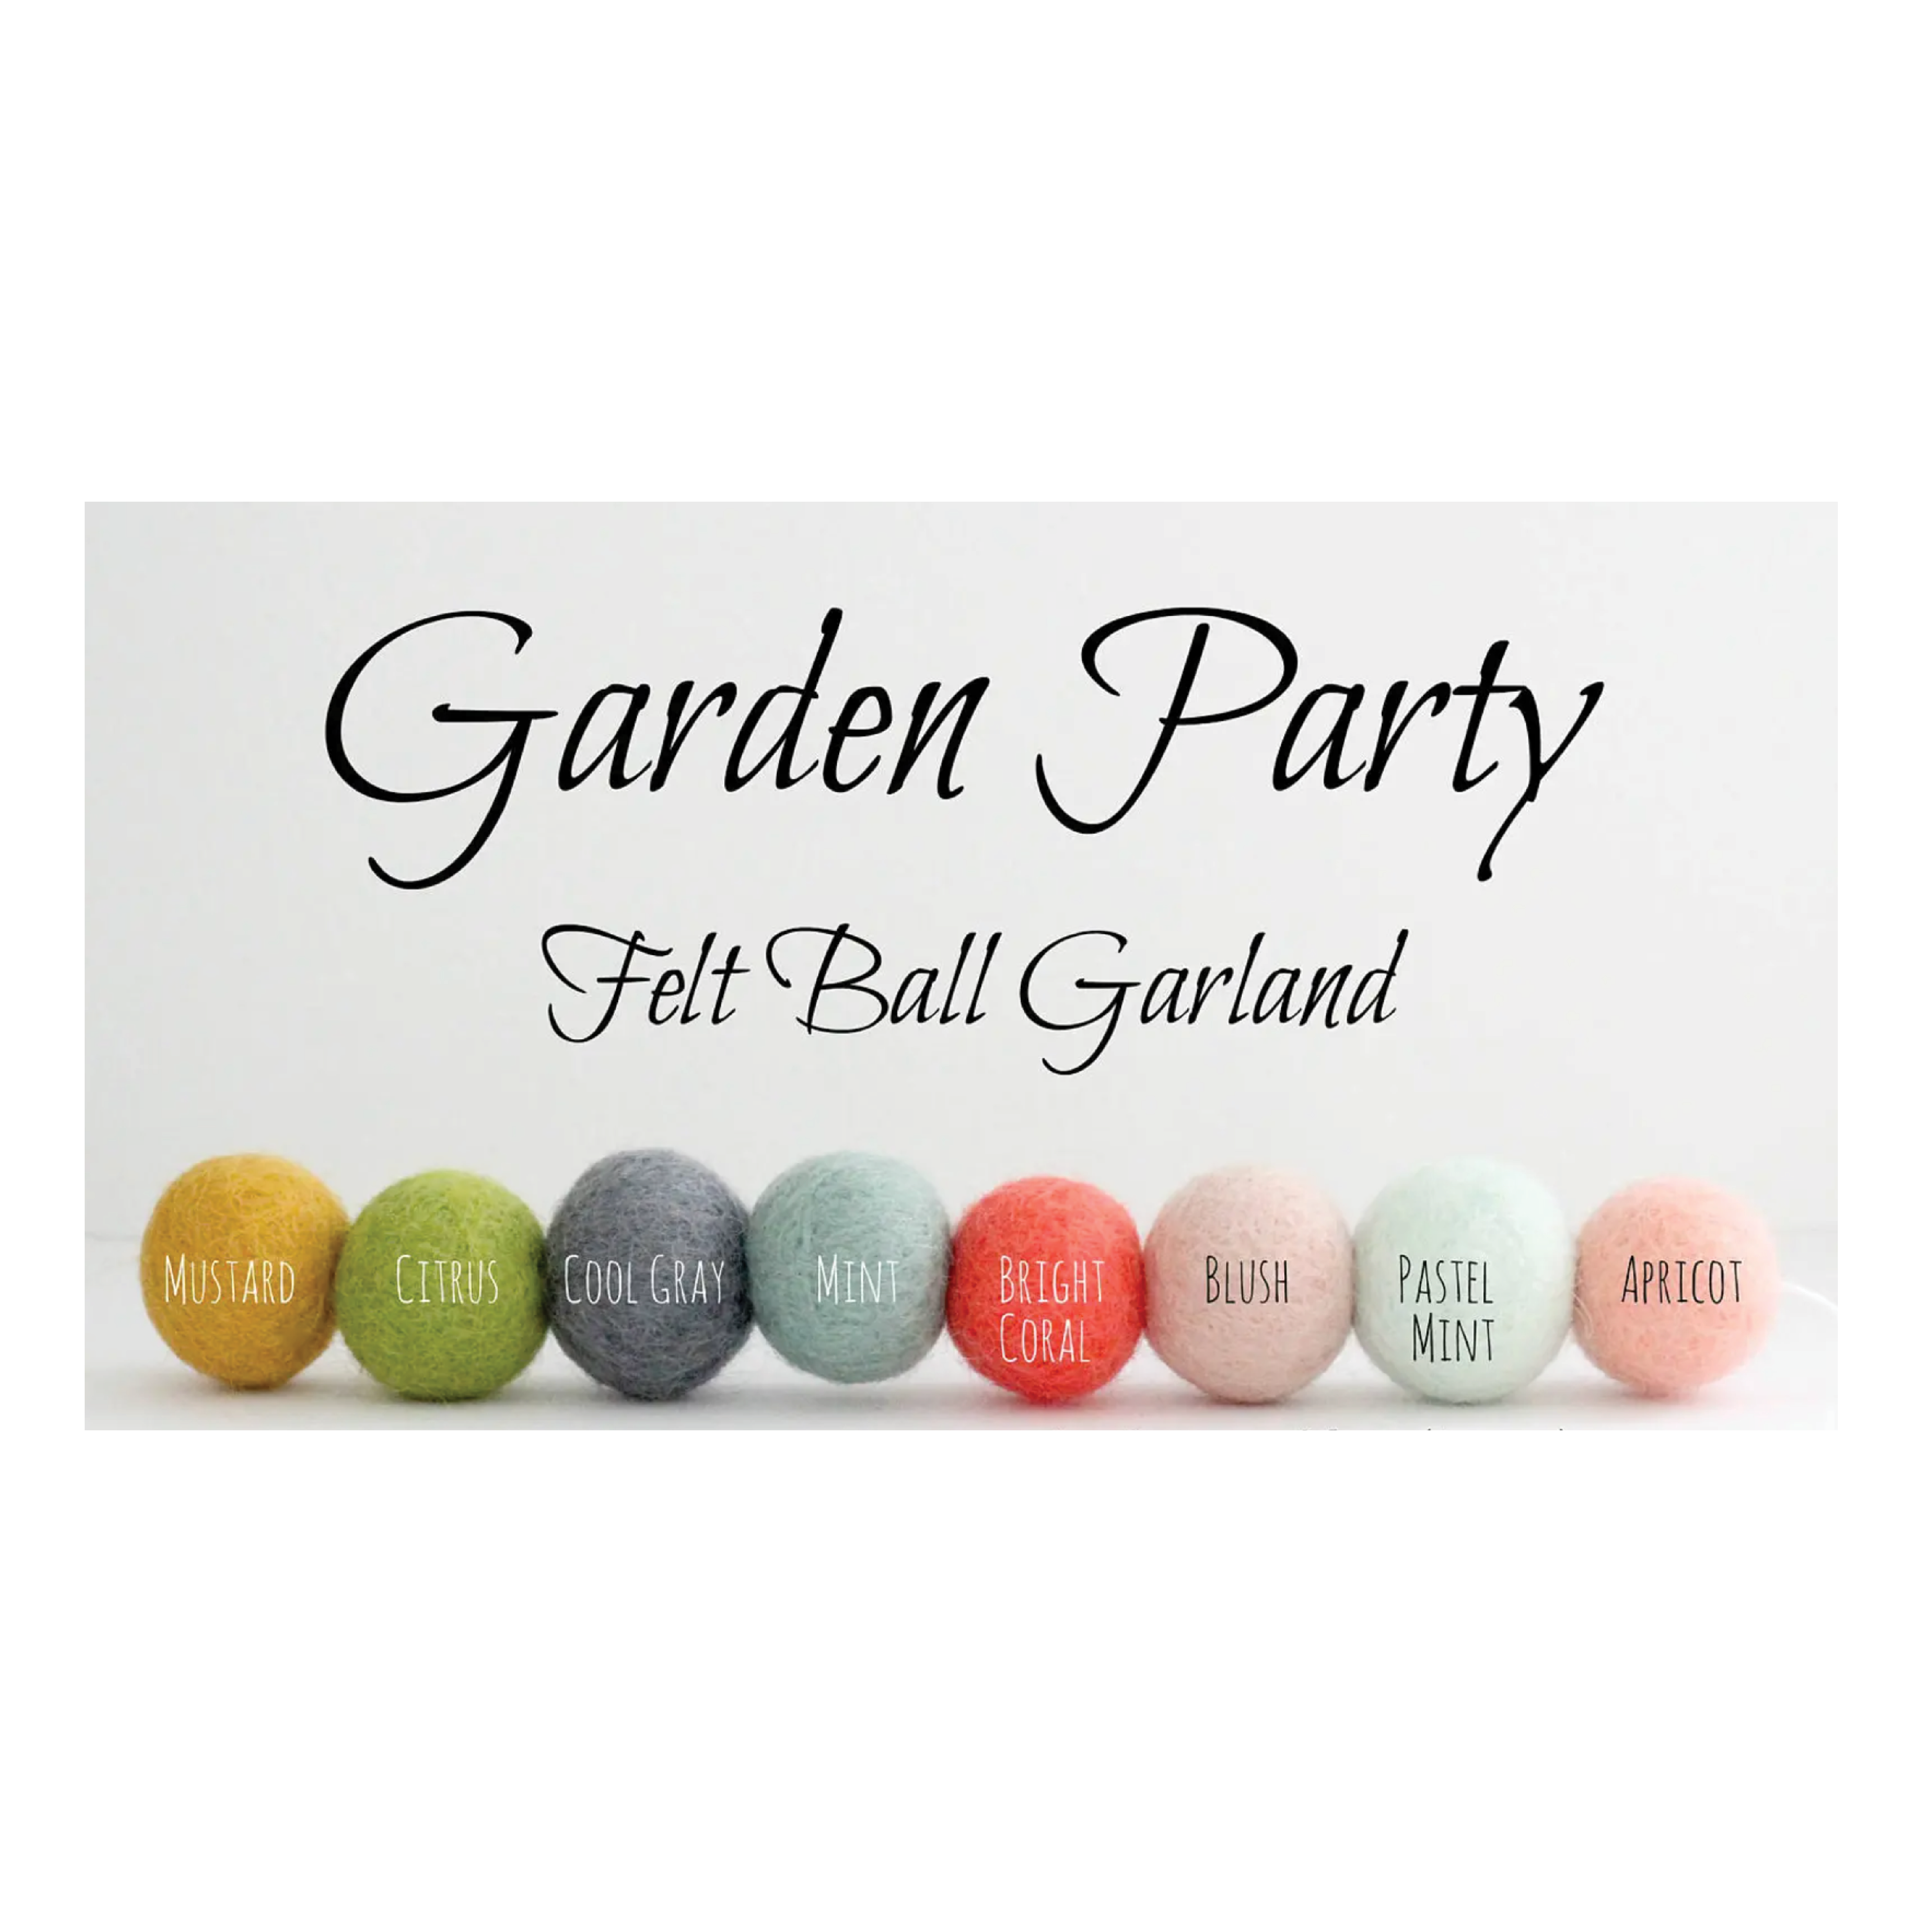 Garden Party Felt Ball Garland: 7 ft.